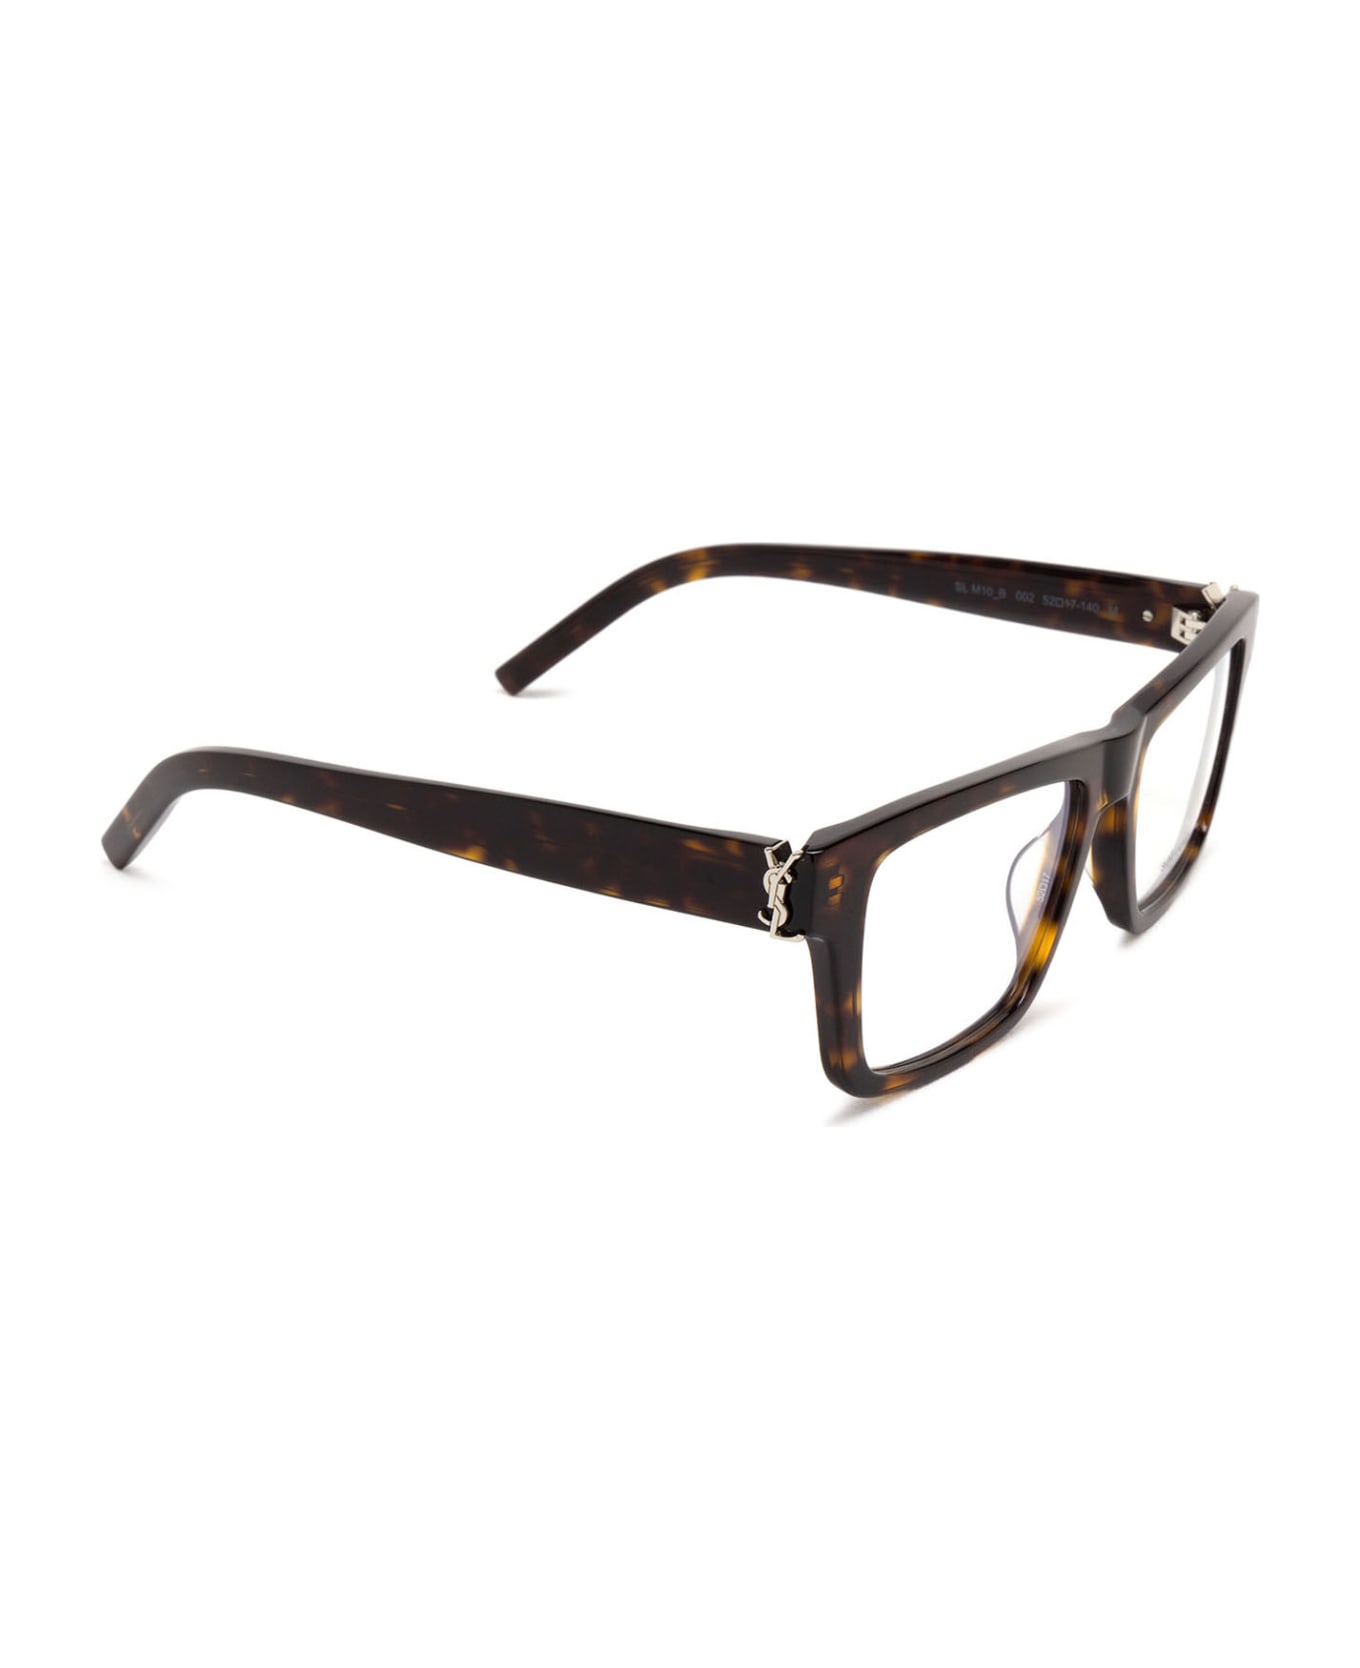 Saint Laurent Eyewear Sl M10_b Havana Glasses - Havana アイウェア